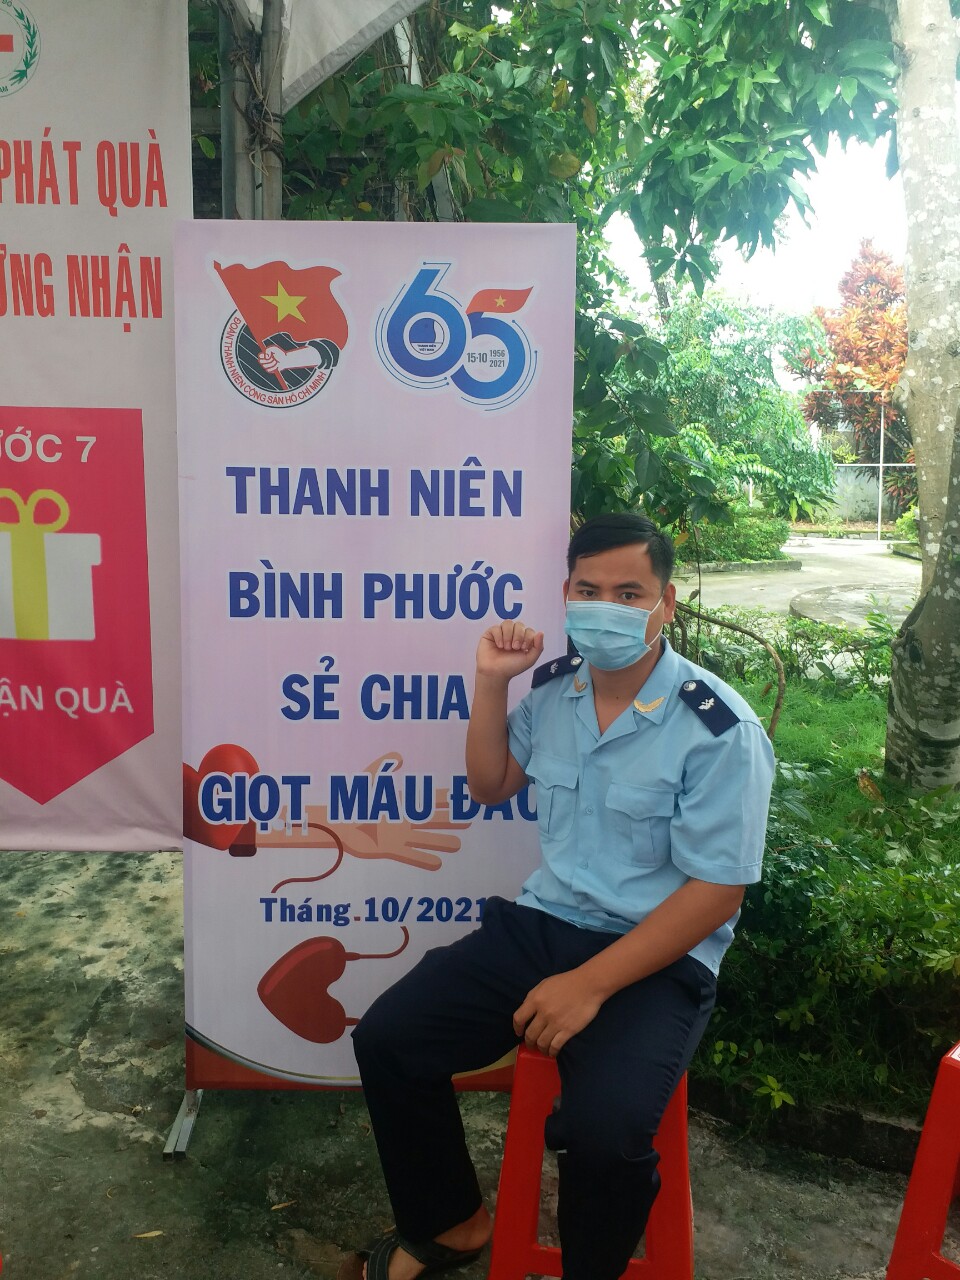 Thanh niên Hải quan Bình Phước tham gia hiến máu